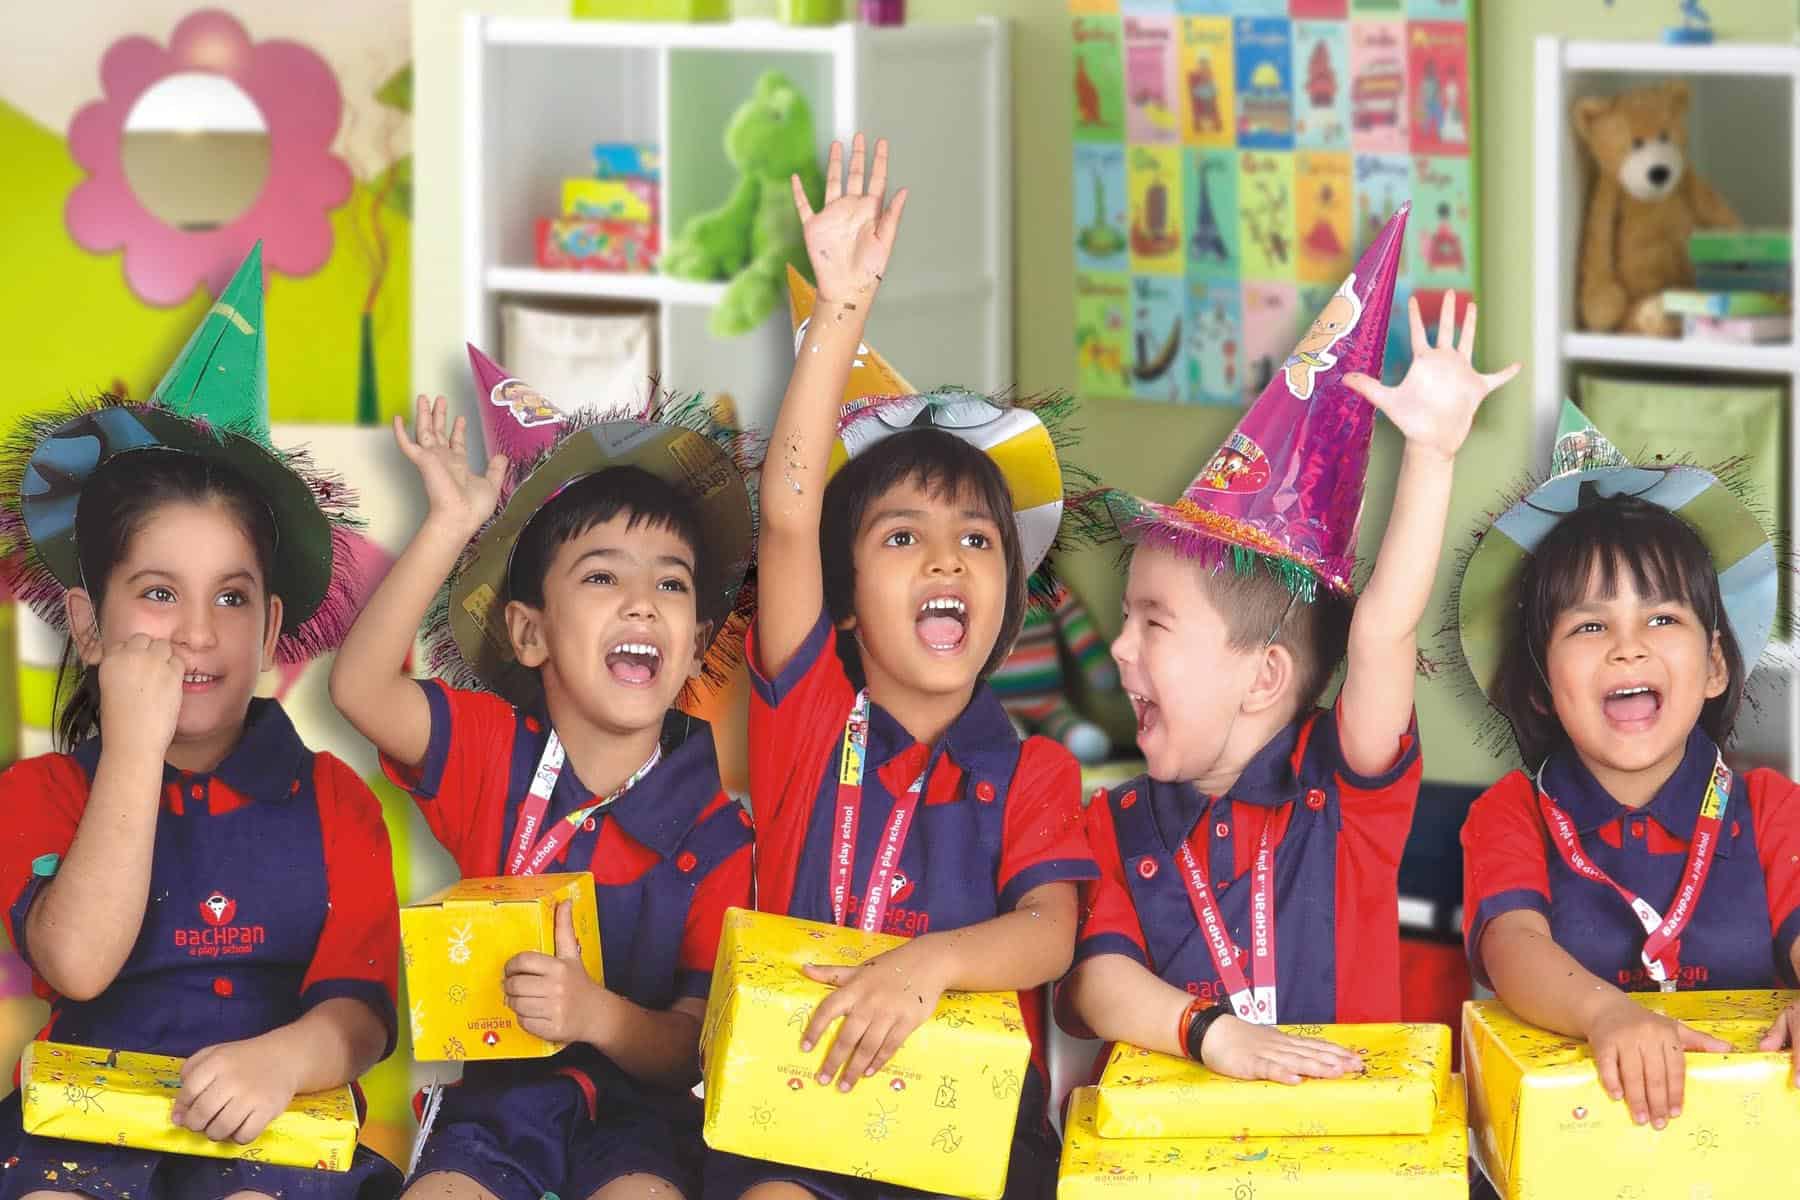 وزارة التربية والتعليم تُعلن عن شروط التقديم إلى رياض الأطفال بالمدارس الحكومية